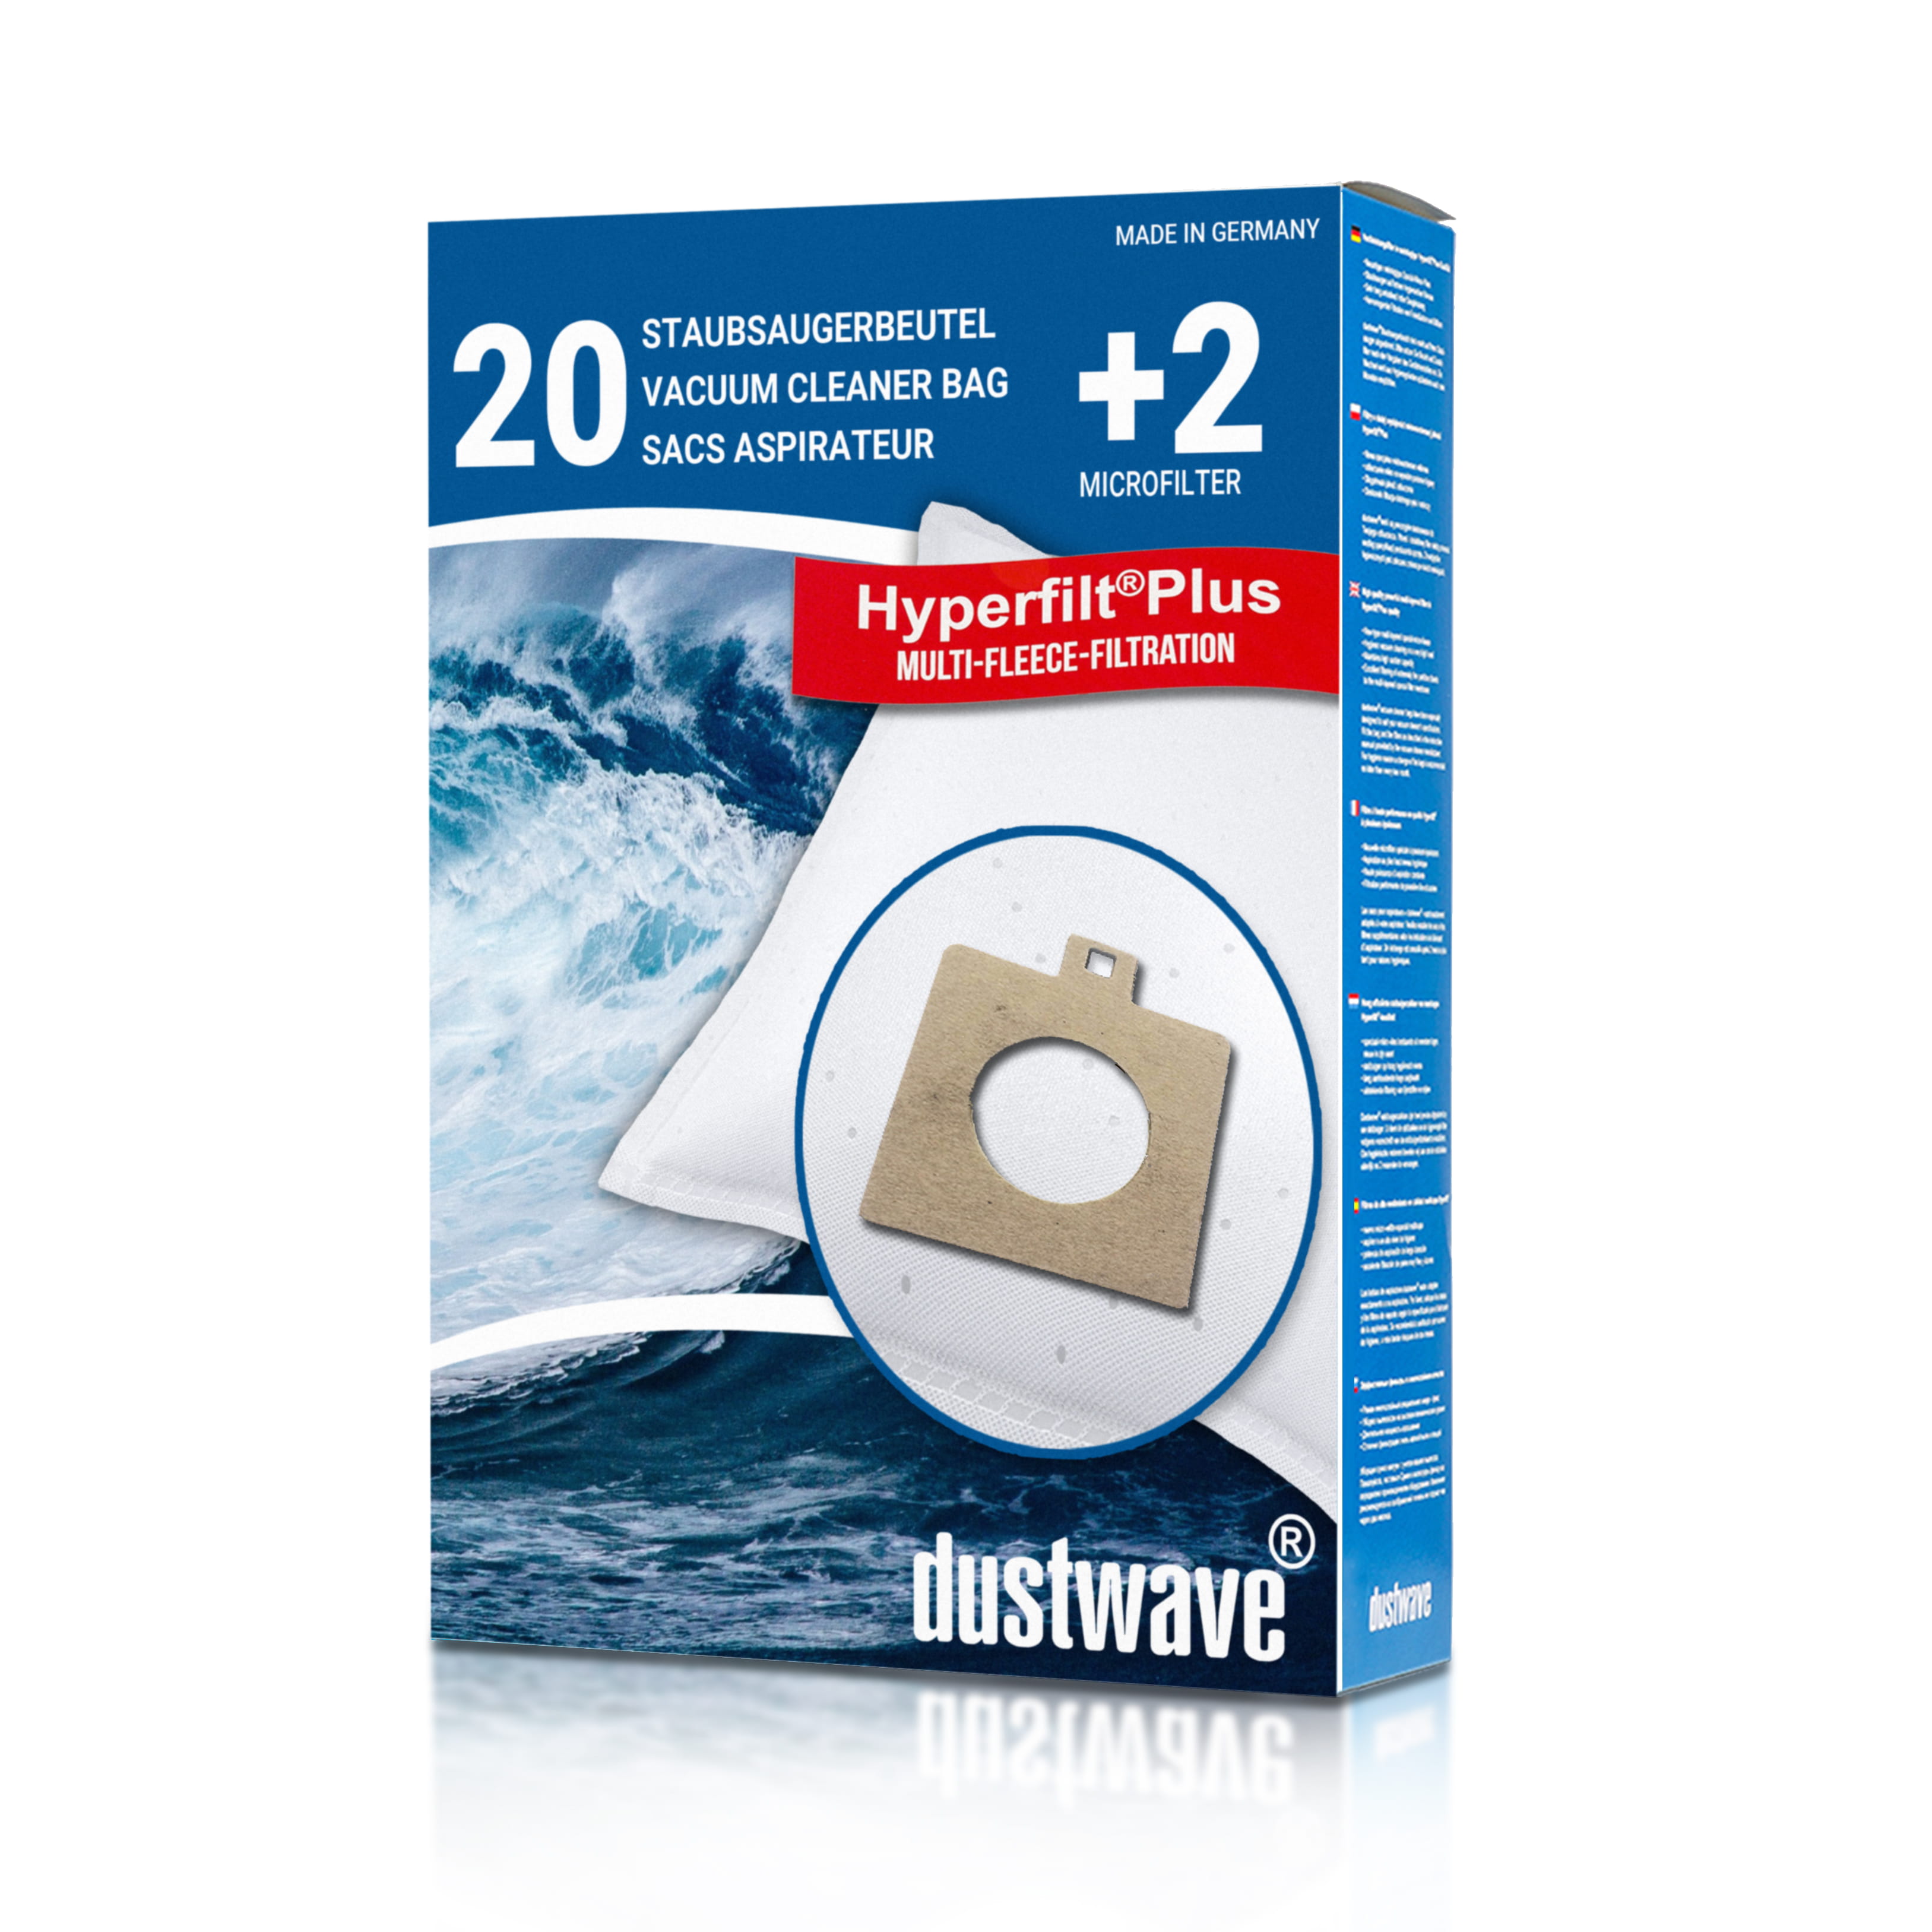 Dustwave® 20 Staubsaugerbeutel für AEG Smart 460 - hocheffizient mit Hygieneverschluss - Made in Germany